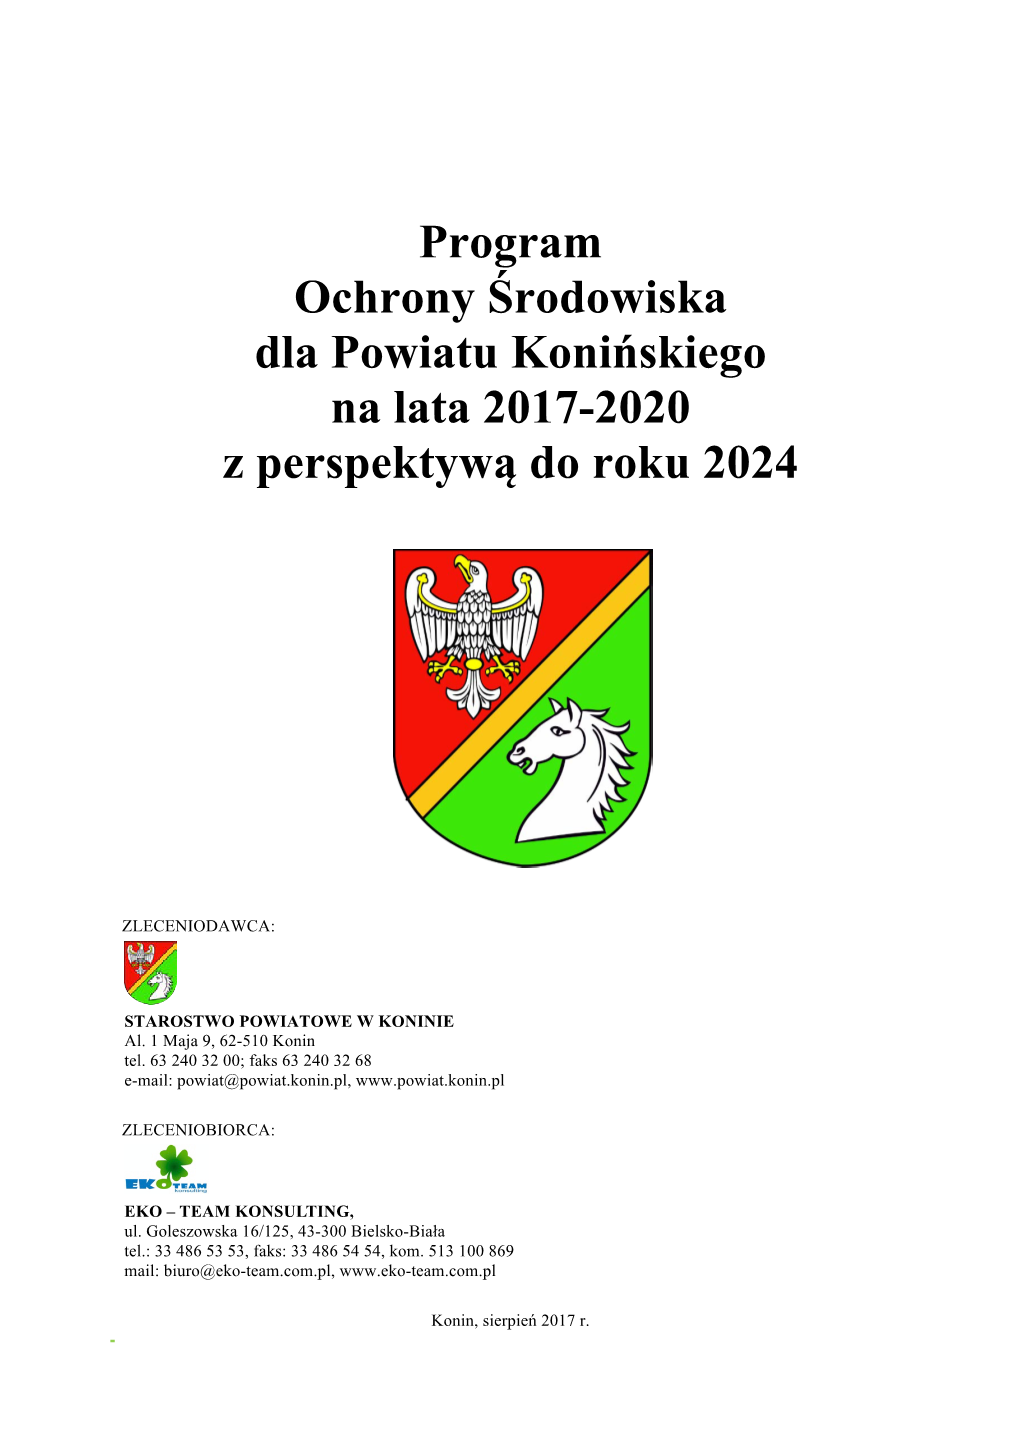 Program Ochrony Środowiska Dla Powiatu Konińskiego Na Lata 2017-2020 Z Perspektywą Do Roku 2024